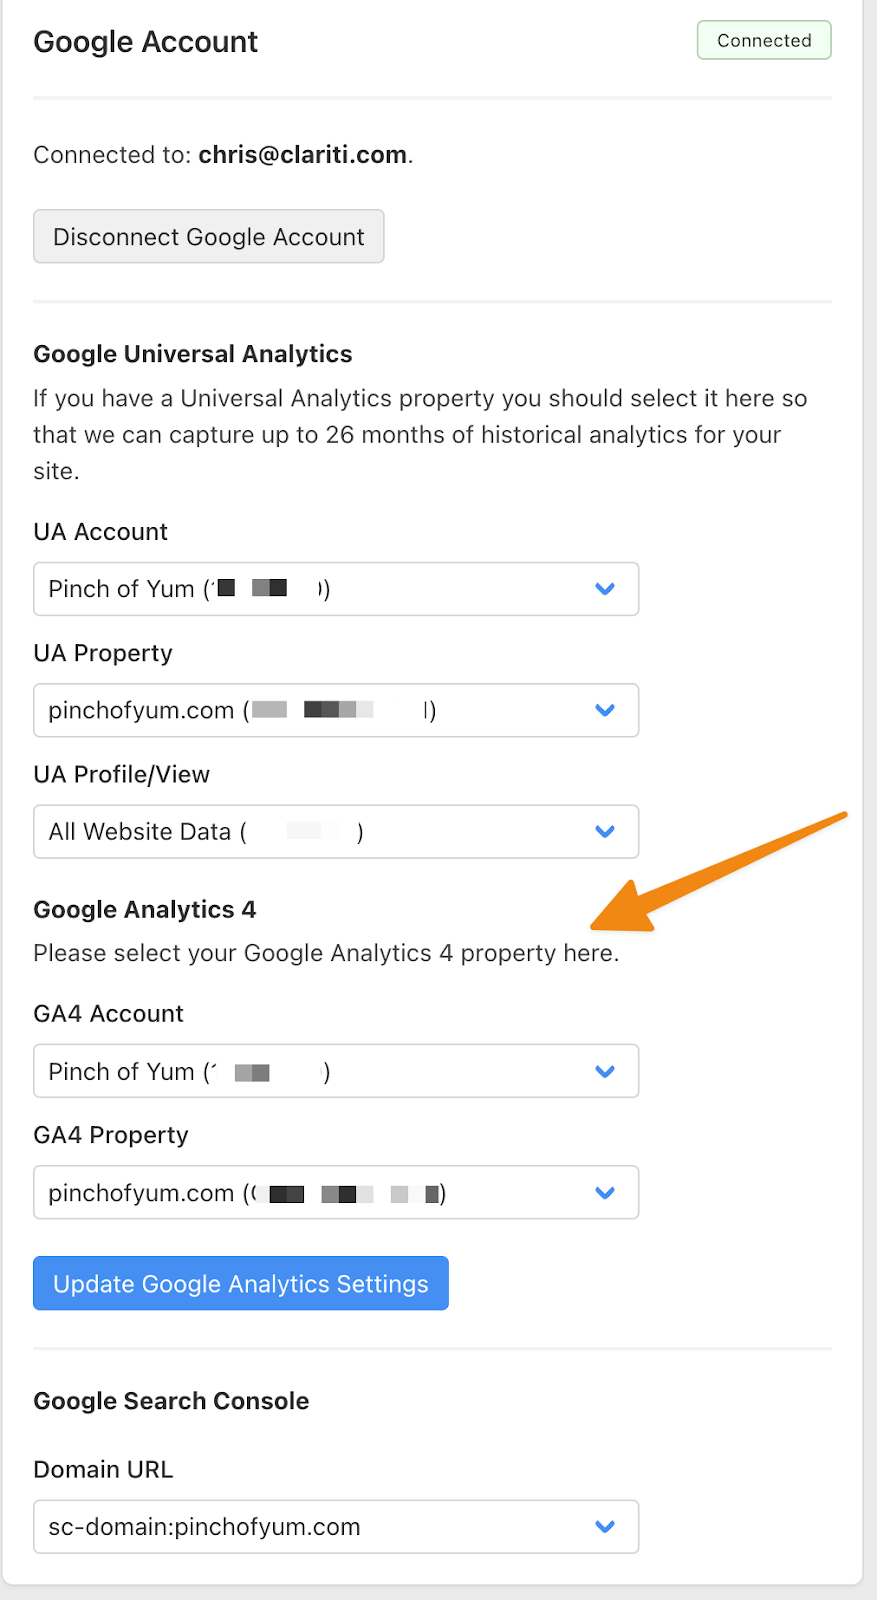 Screenshot of Google Analytics settings in Clariti